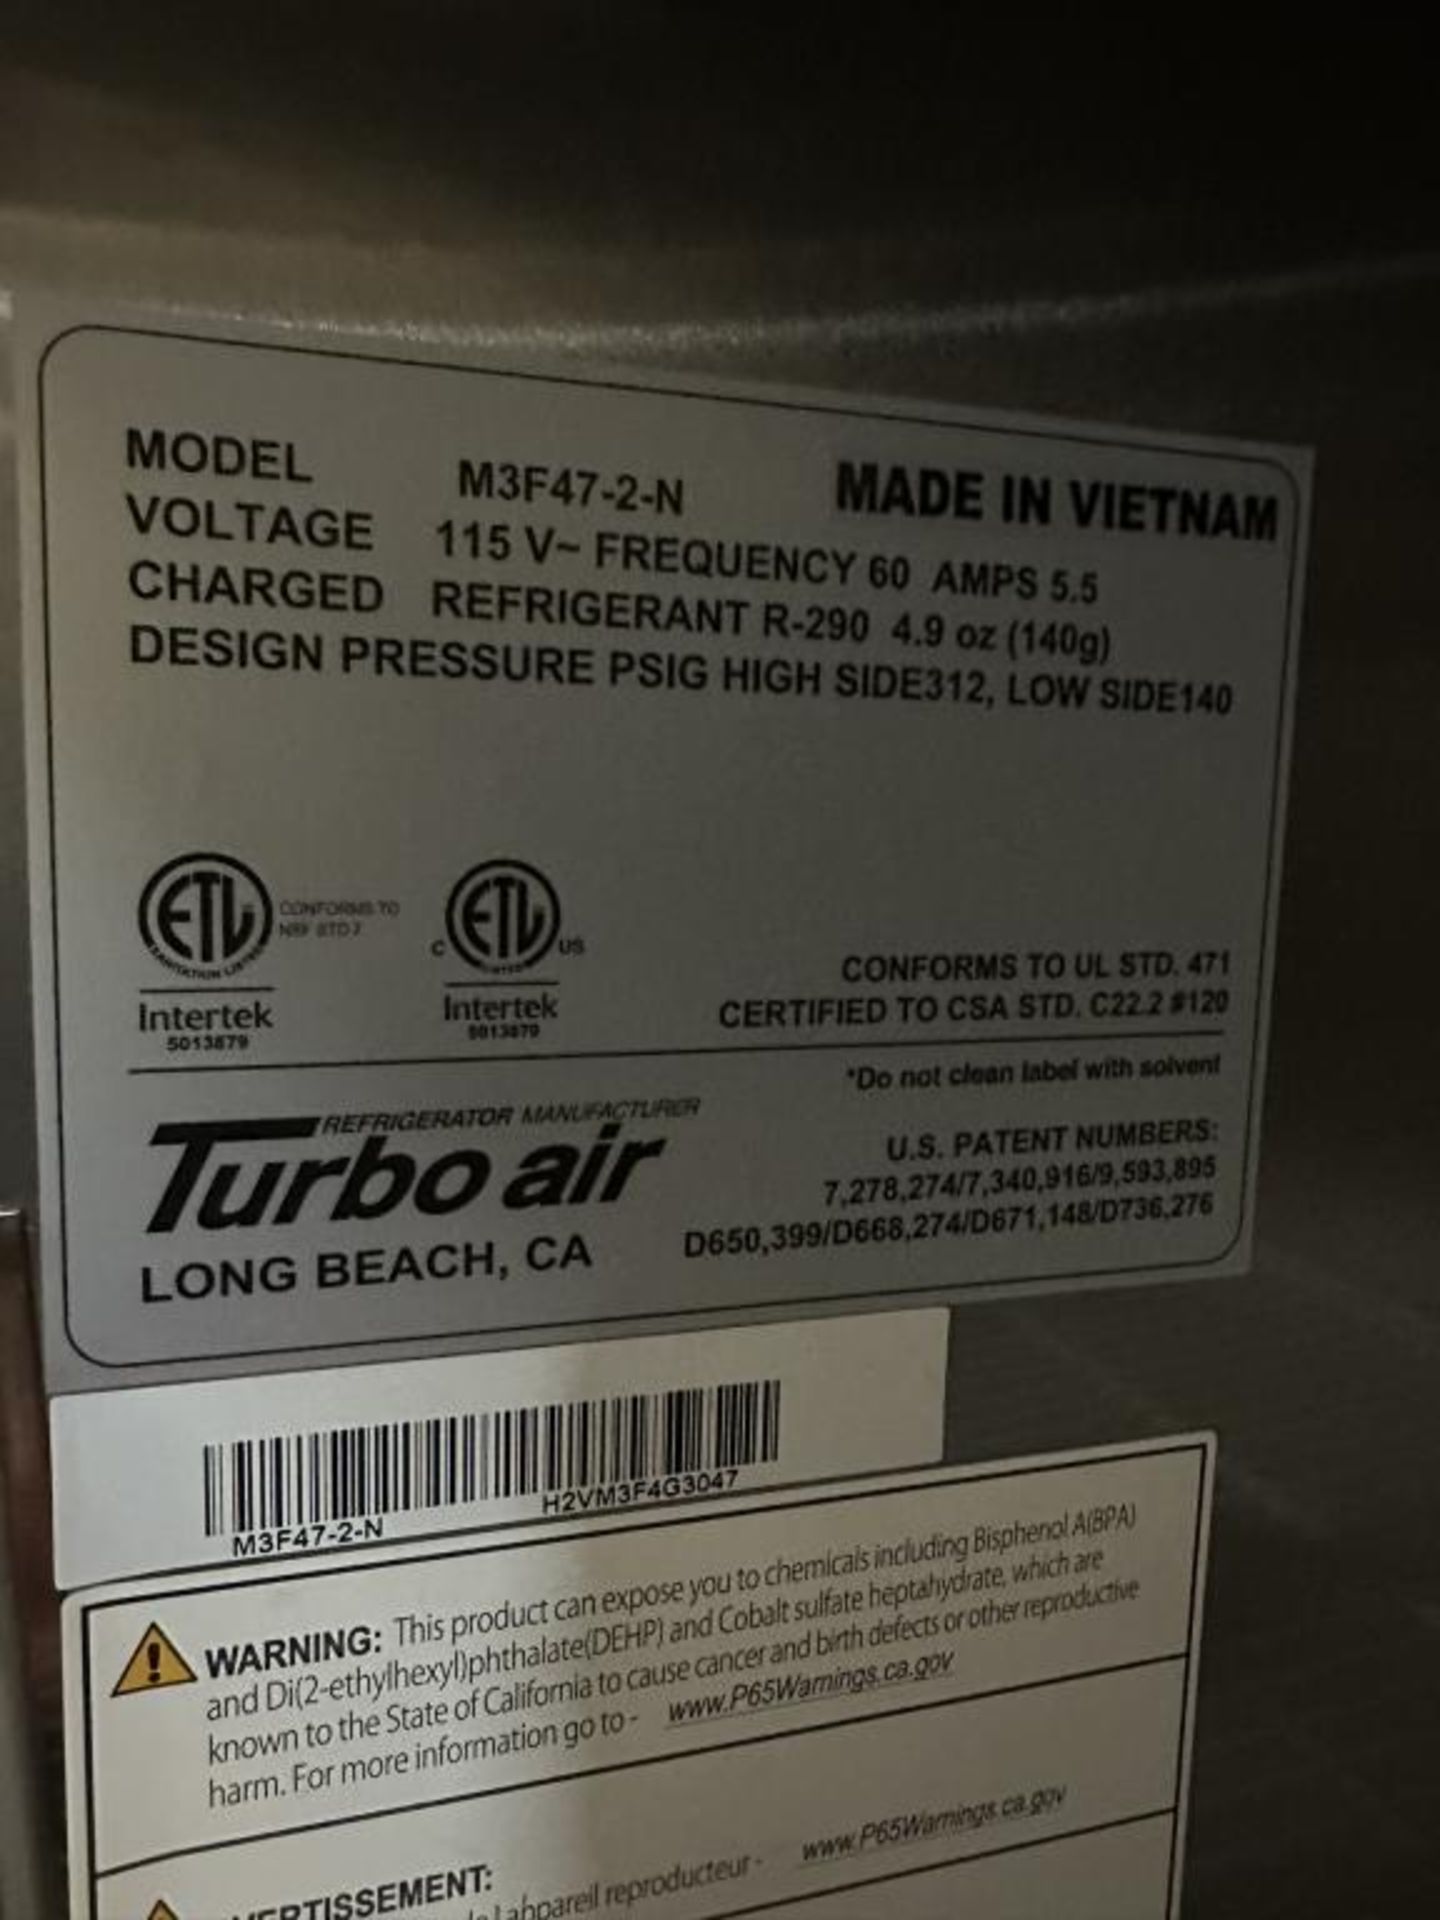 Turbo Air2-Door Commercial Freezer - Image 3 of 3